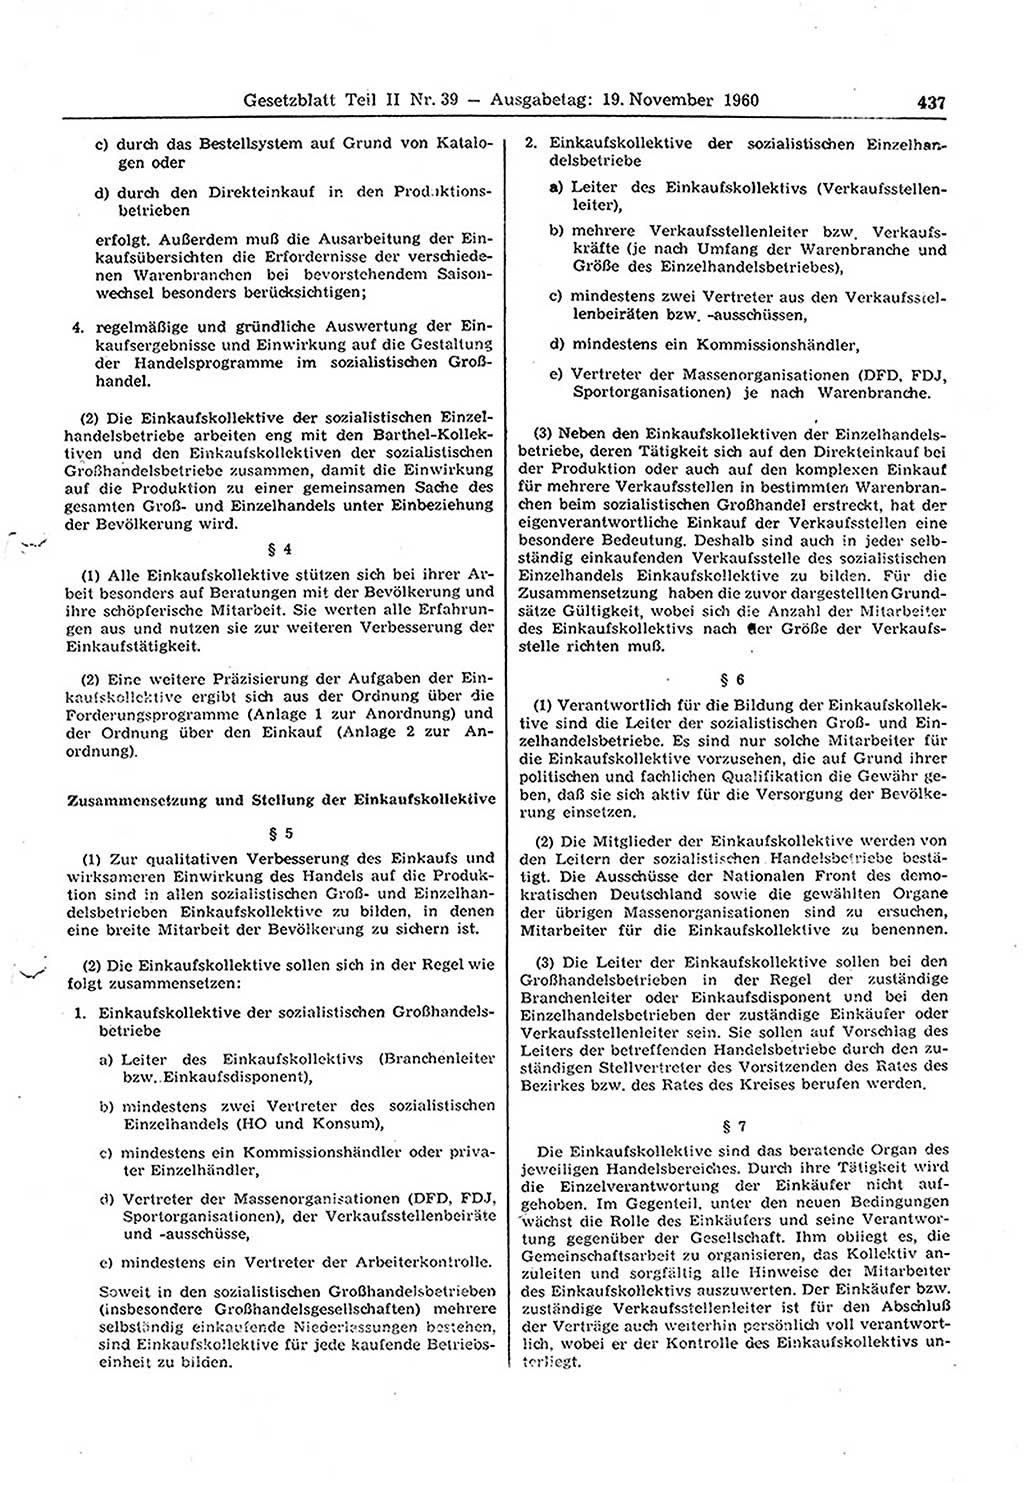 Gesetzblatt (GBl.) der Deutschen Demokratischen Republik (DDR) Teil ⅠⅠ 1960, Seite 437 (GBl. DDR ⅠⅠ 1960, S. 437)